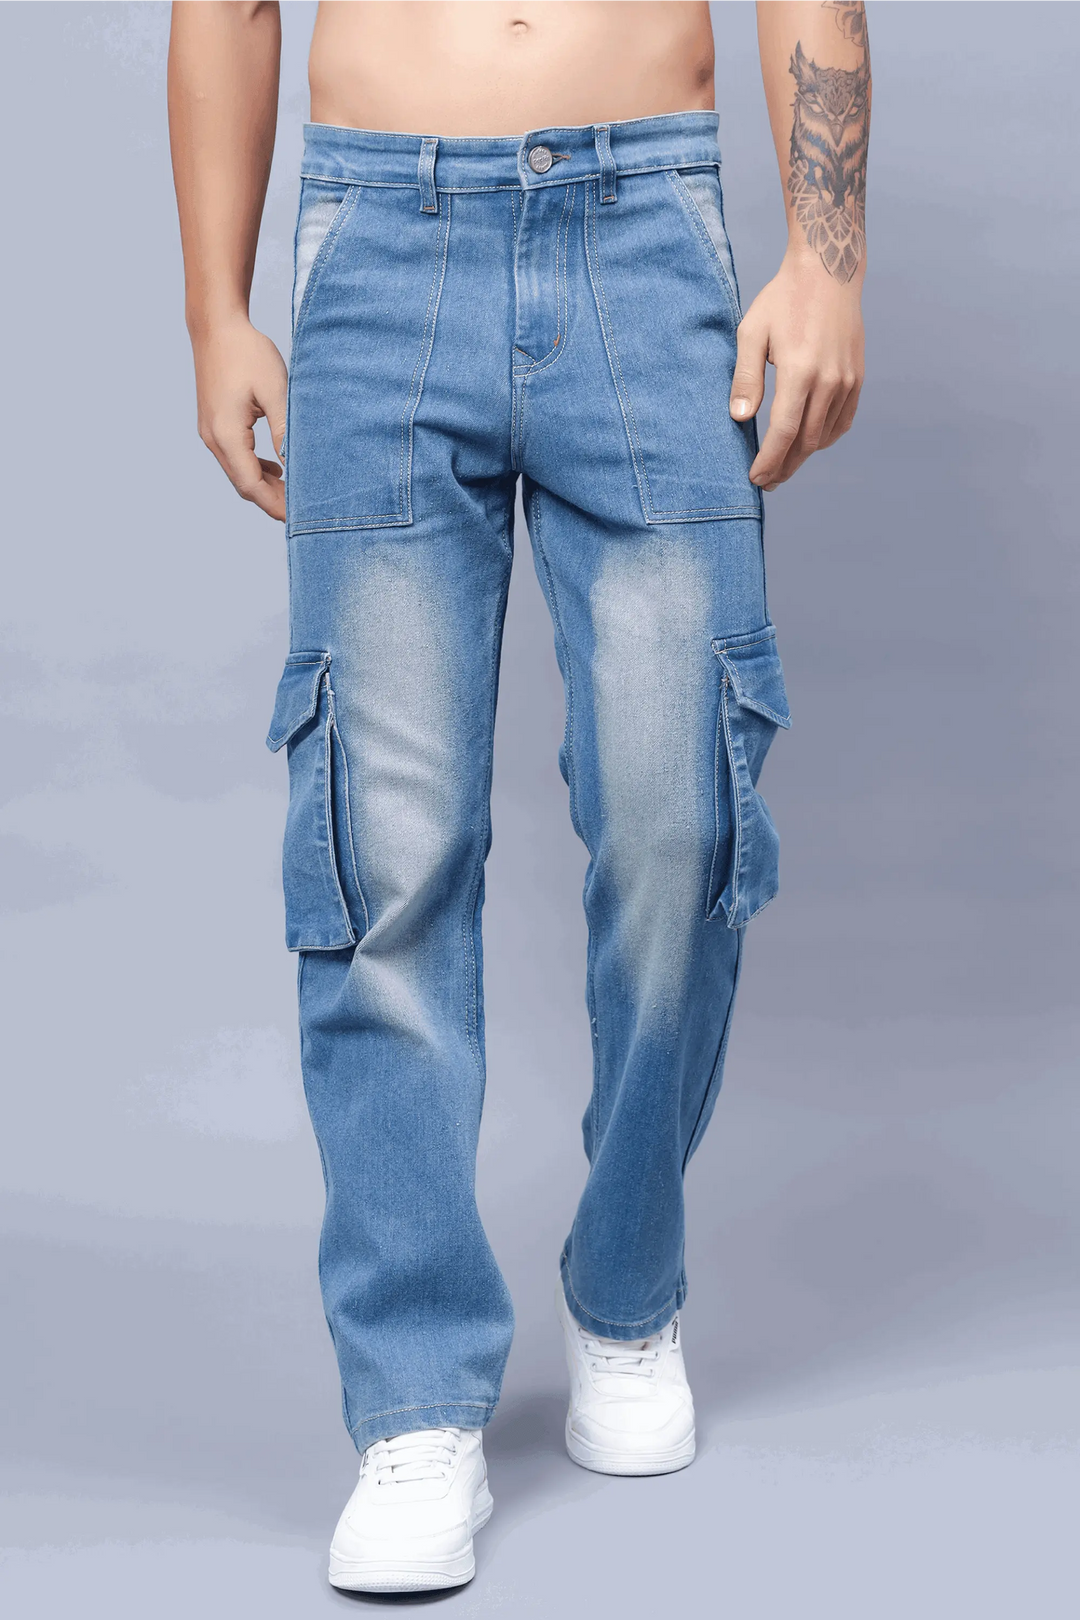 Pocket Jeans - Buy Pocket Jeans online in India